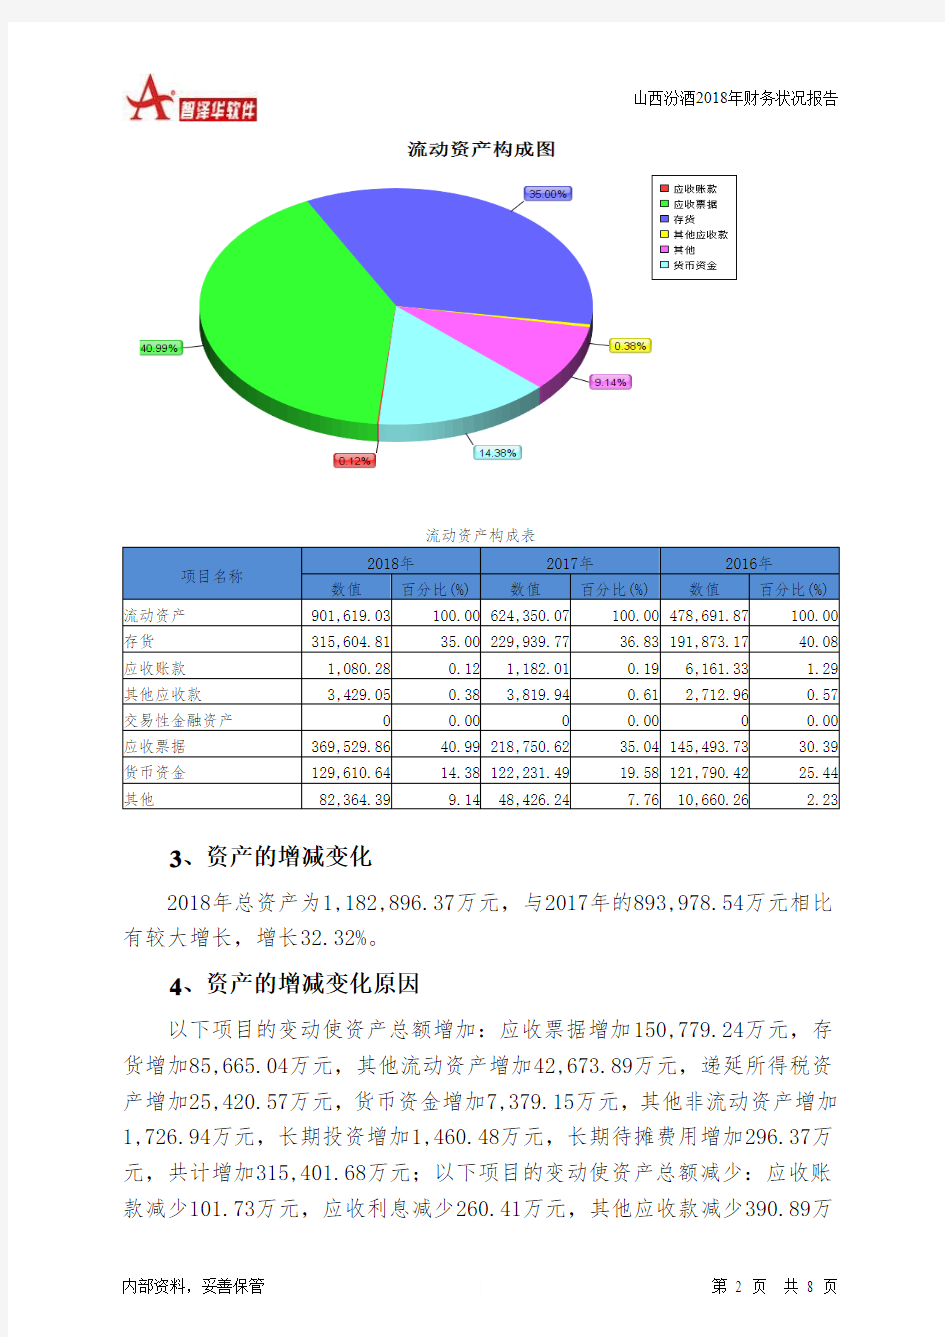 山西汾酒2018年财务状况报告-智泽华